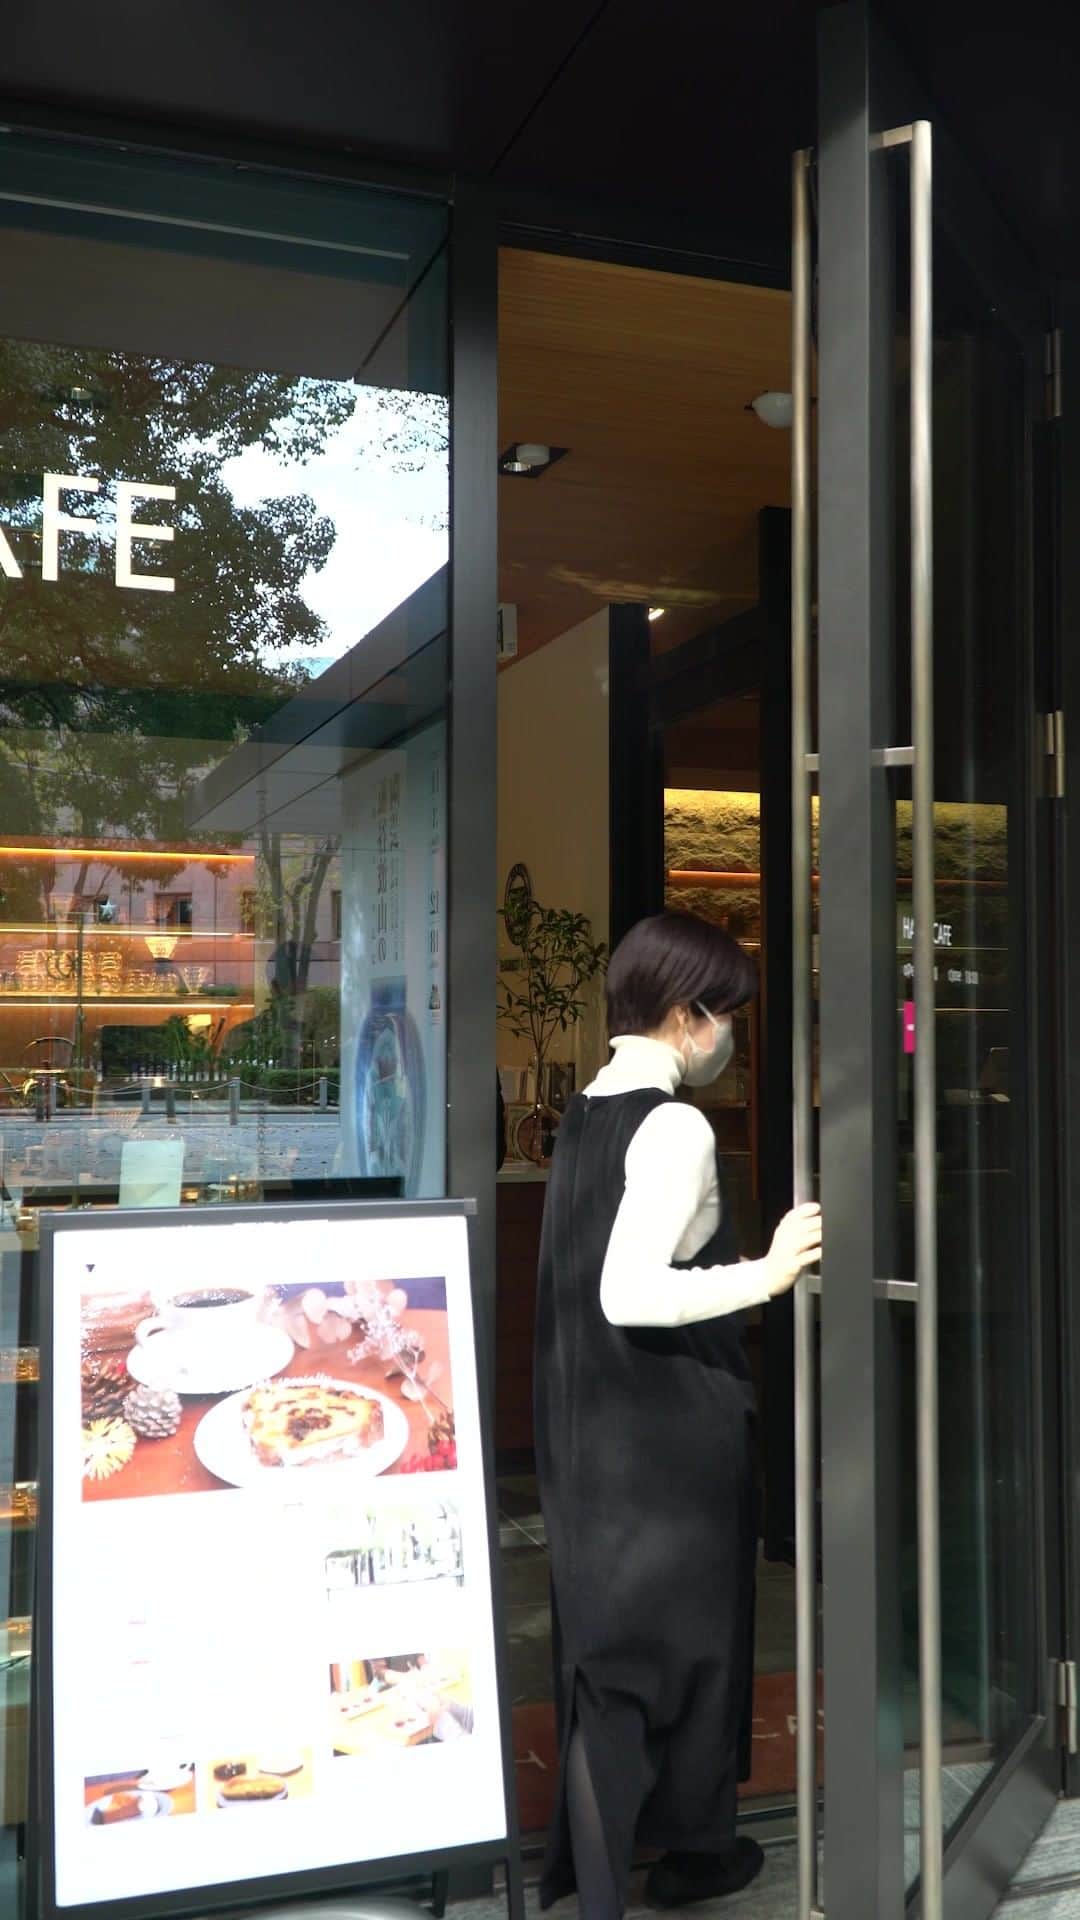 HARIOのインスタグラム：「ㅤㅤㅤㅤㅤㅤㅤㅤㅤㅤㅤㅤ 【HARIO CAFE 泉屋博古館東京店】  HARIOのカフェは六本木一丁目にある 美術館「泉屋博古館東京」にもあります。  泉ガーデンの緑にかこまれた中にある とても居心地のよいカフェになっています。  ここでは、V60やサイフォンで淹れたコーヒーを 楽しんでいただけたり、HARIOのコーヒー器具や ガラスアクセサリーの販売もしています。  年内は、12月30日（金）15:00まで、 年始は1月4日（水）より営業しております。  クリスマスギフト探しにも ぜひお越しいただけましたら幸いです。  ---------------------------------- HARIO CAFE 泉屋博古館東京店 〒106-0032　東京都港区六本木1丁目5-1 tel 03-6441-2040 営業時間　11:00～18:00 ＊現在、美術館は次回展示まで休館中です @hariocafe_senokuhakukokan  #hario #v60 #hariocafe #hariocafe泉屋博古館東京店 #ハリオカフェ泉屋博古館東京店 #六本木一丁目 #六本木 #ガラス #coffeetime #HARIOのある暮らし #brewingcoffee #hariocafe #glassaccessory #coffeeequipment #specialitycoffee #六本木カフェ #六本木一丁目カフェ #ハリオカフェ#teatime #handcraftedaccessory #xmasgift #クリスマスギフト #siphon」